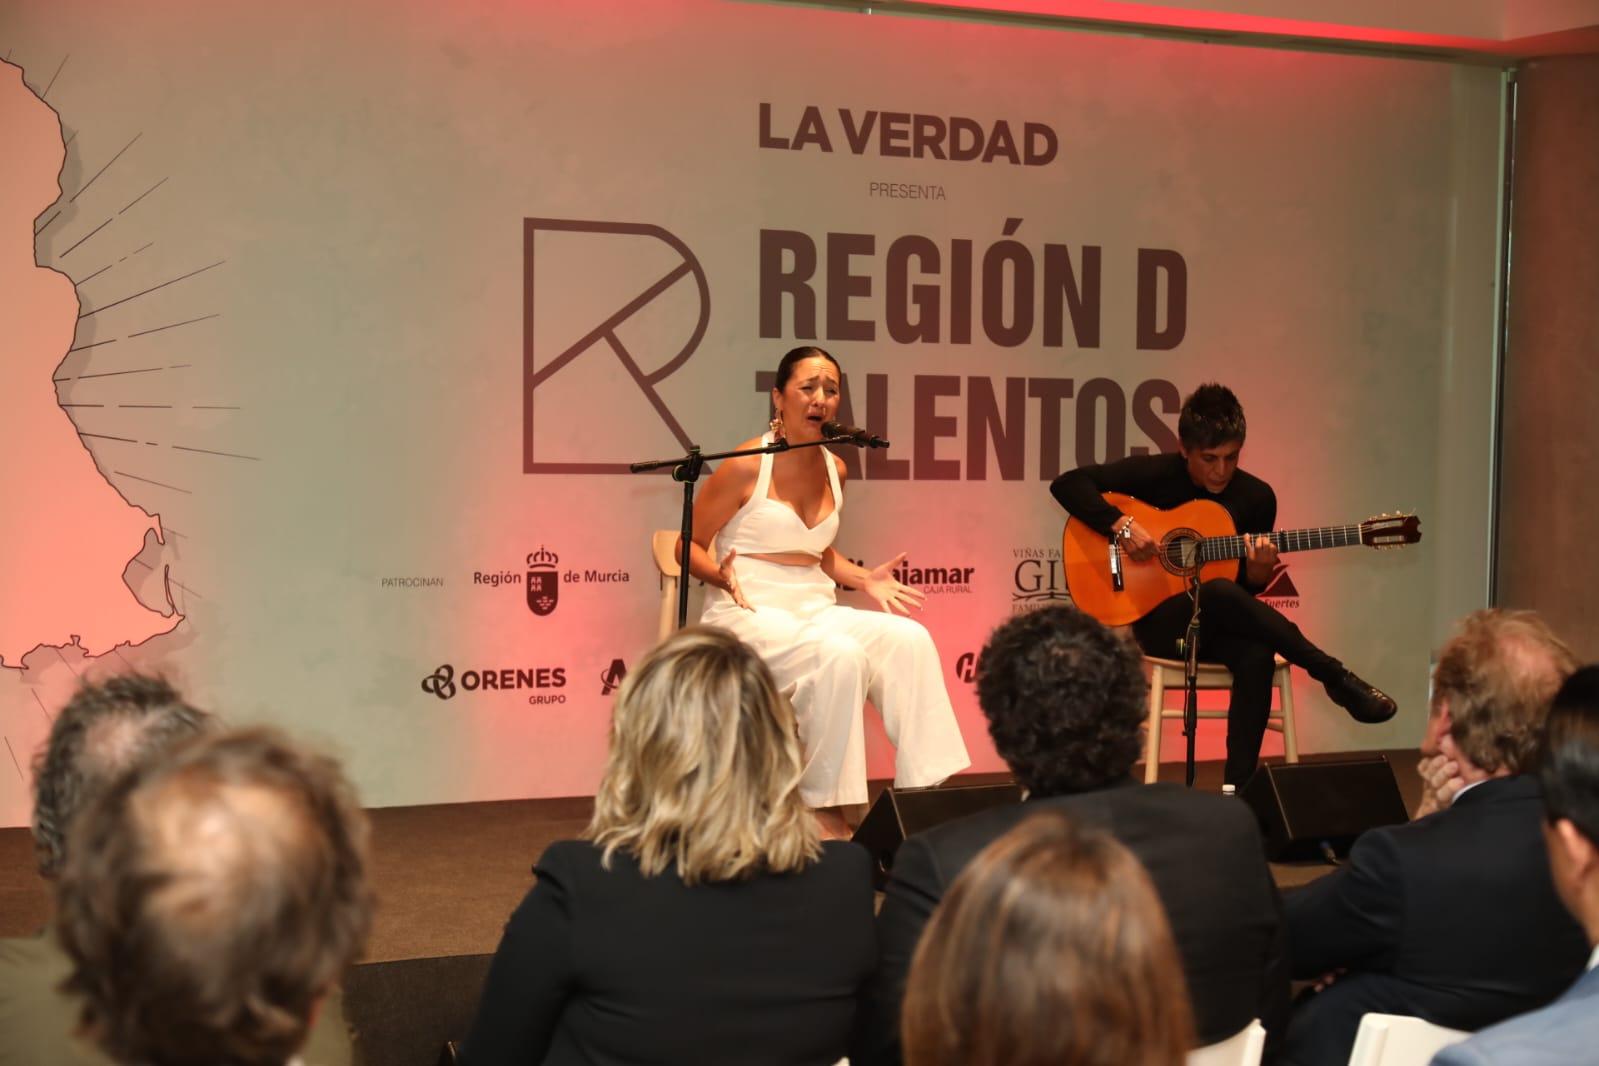  El Cante de las Minas impulsa una ‘Región  D Talentos’ a través del flamenco